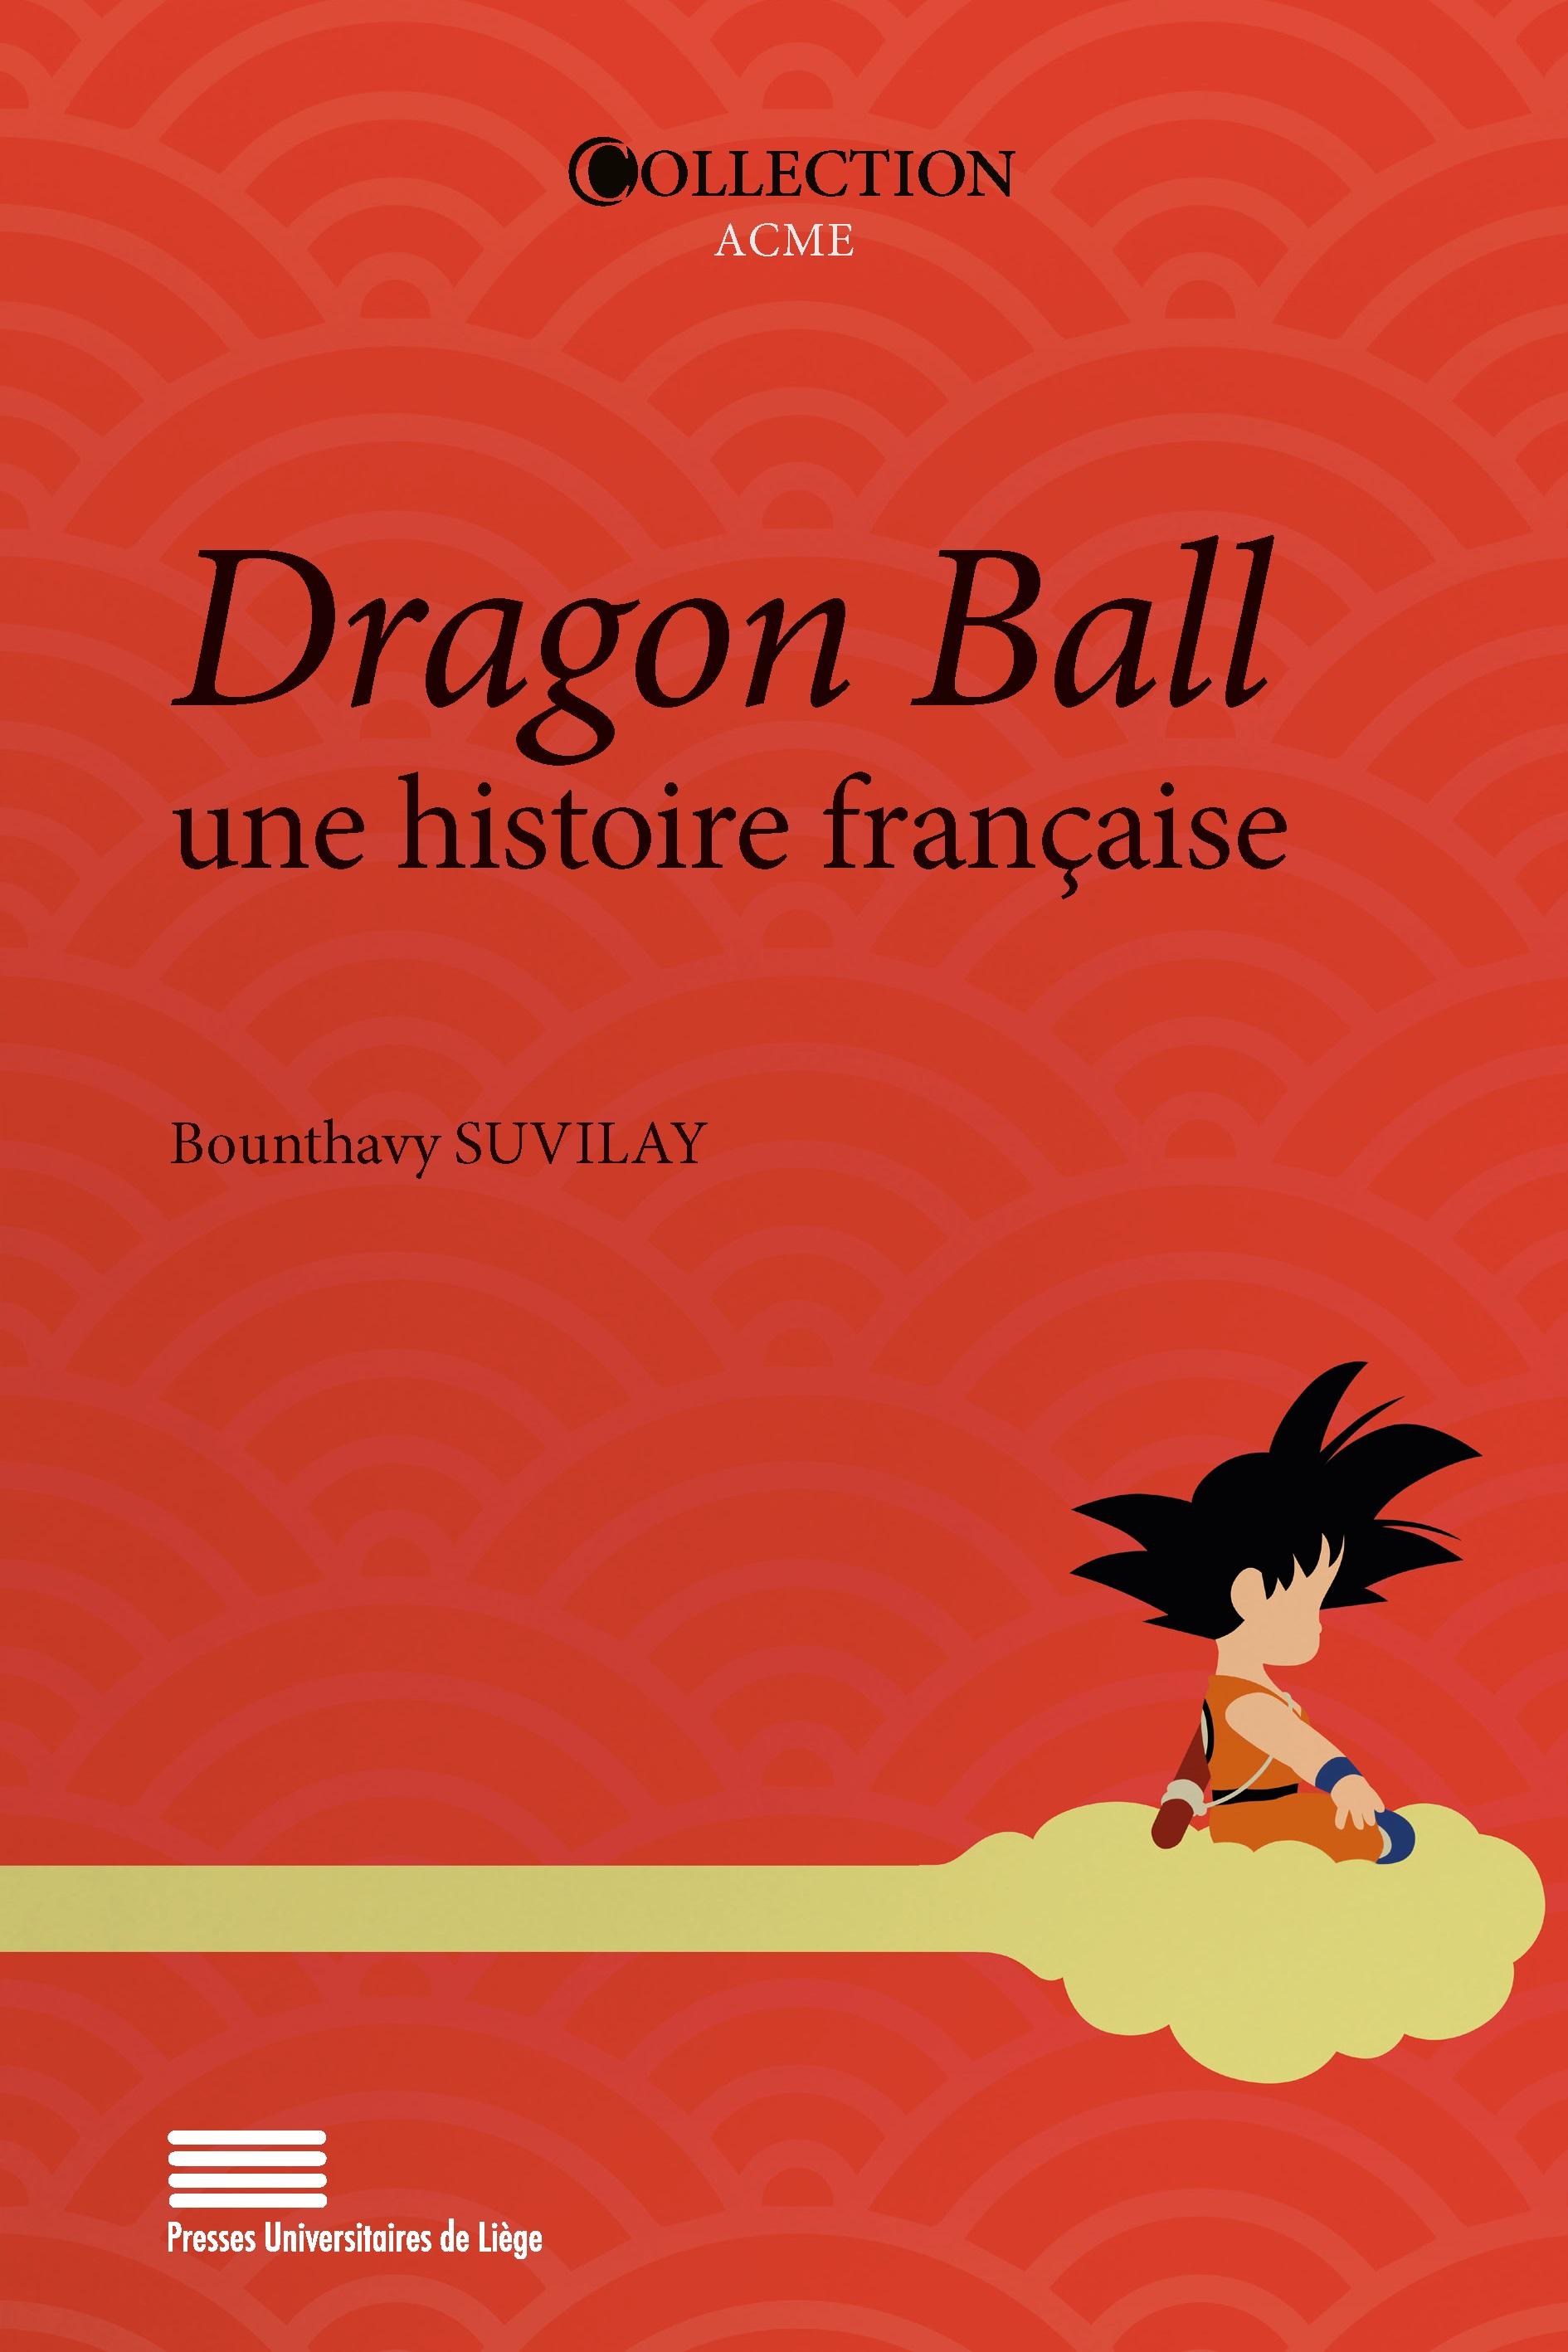 La couverture du livre "Dragon Ball, une histoire française" de Bounthavy Suvilay. [Presses Universitaires de Liège]